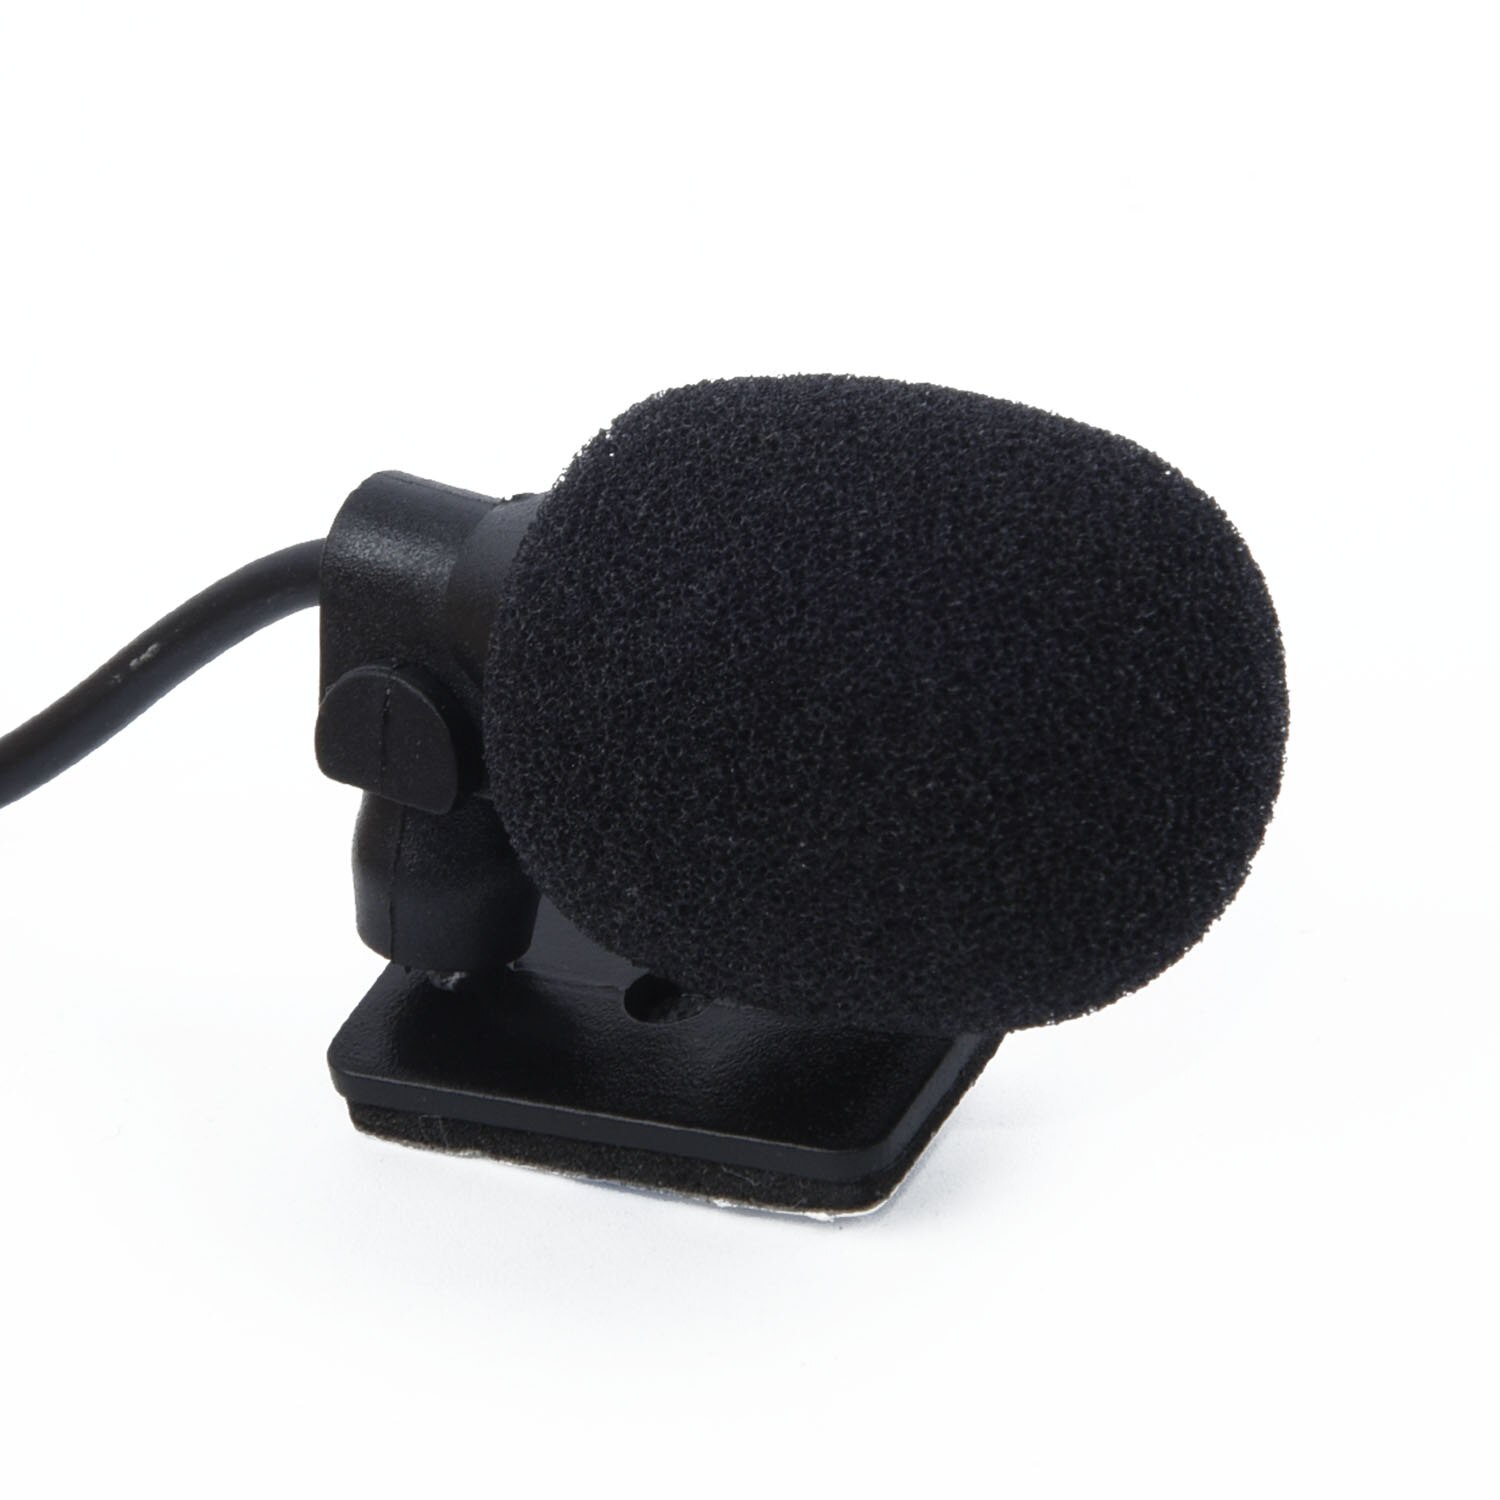 2.5Mm Bluetooth Externe Microfoon Voor Pioneer Stereos Radio Ontvanger Beugel